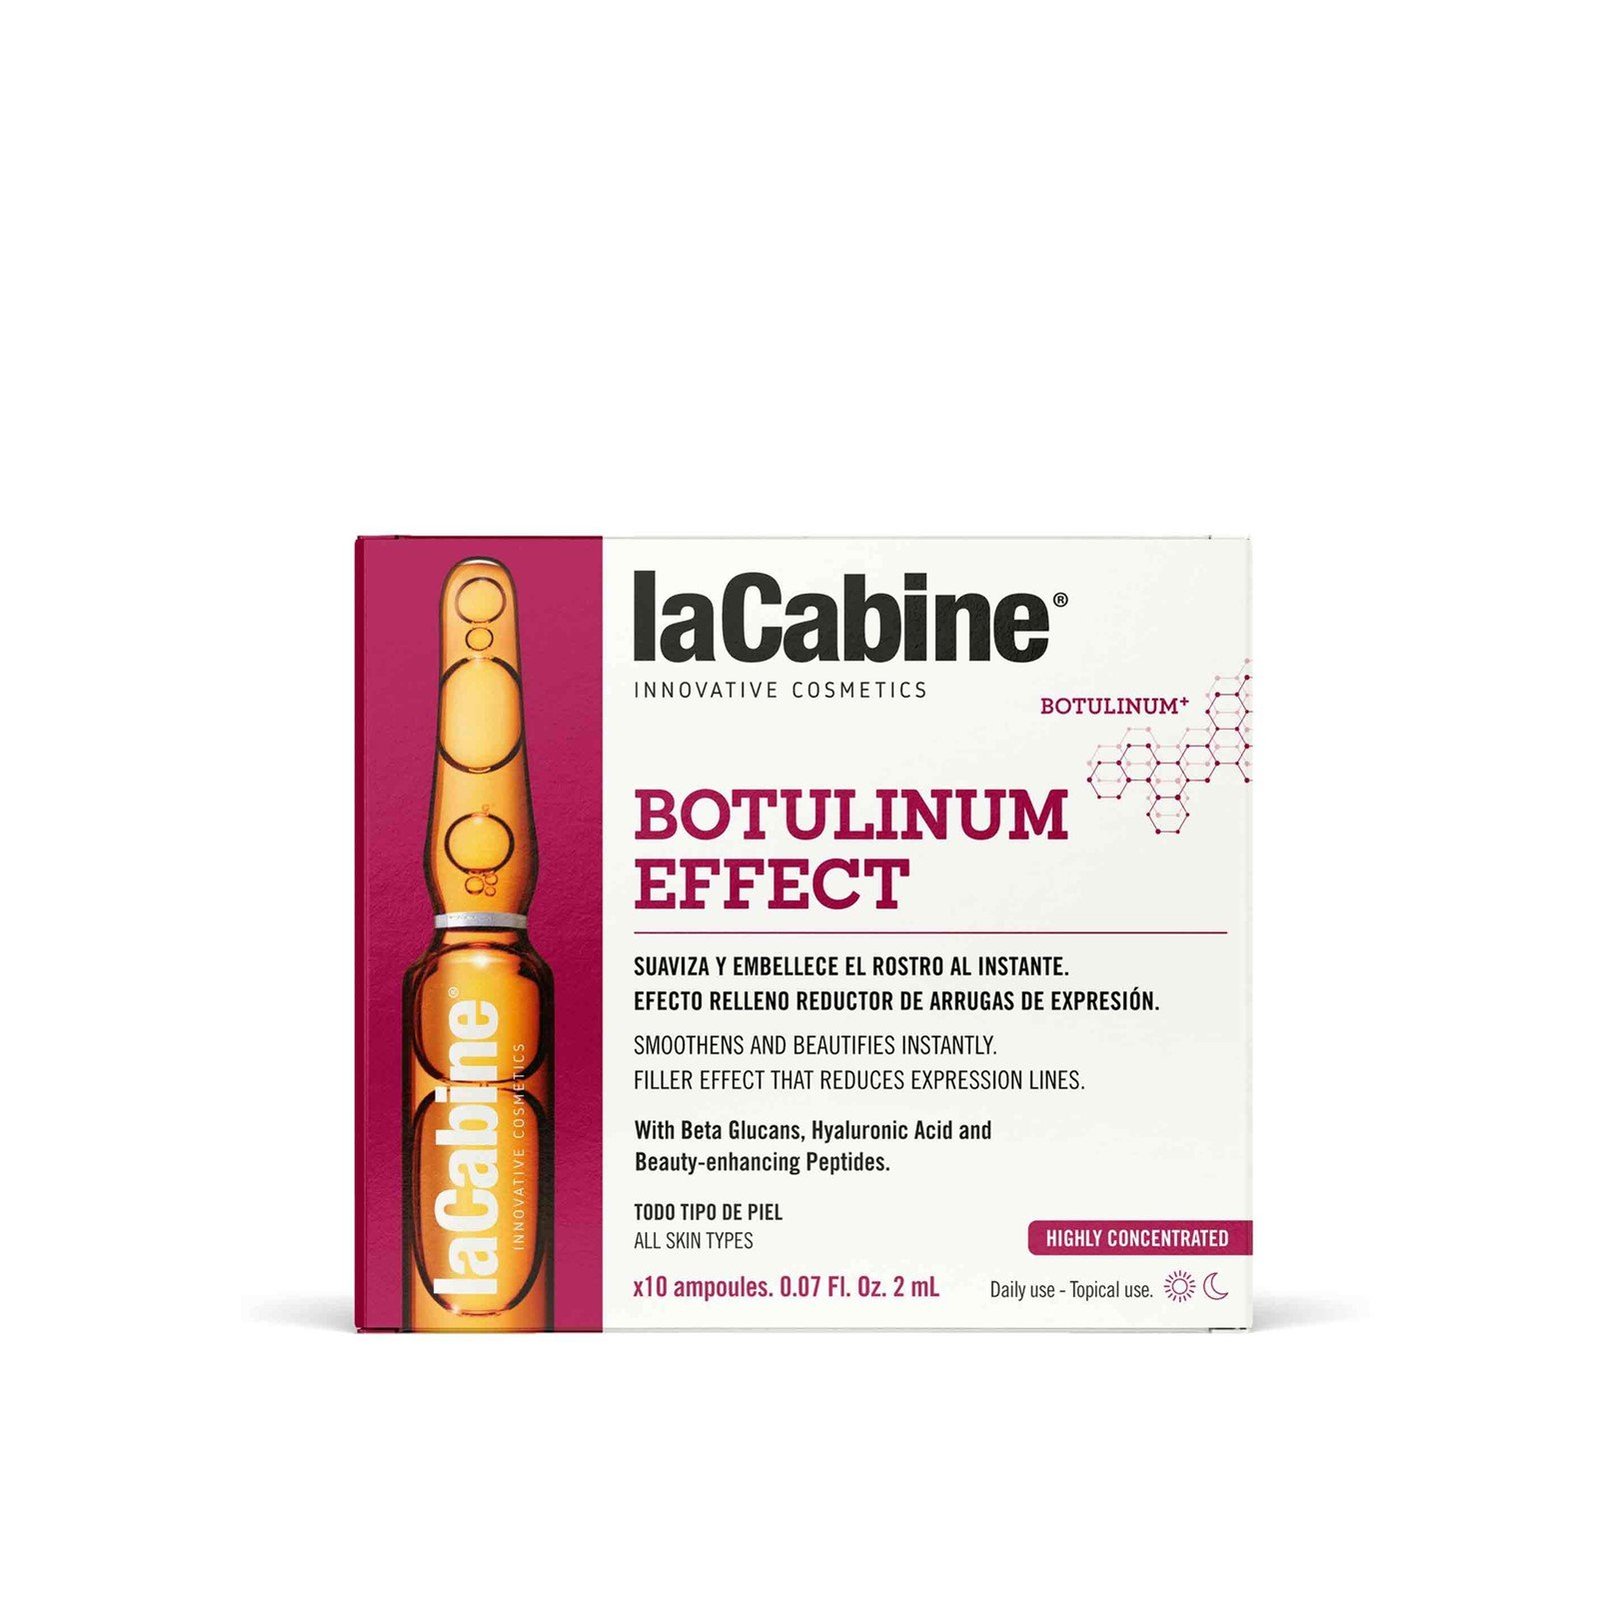 La Cabine Botulinum Effect Concentrated Ampoules 10x2ml (10x0.07 fl oz)